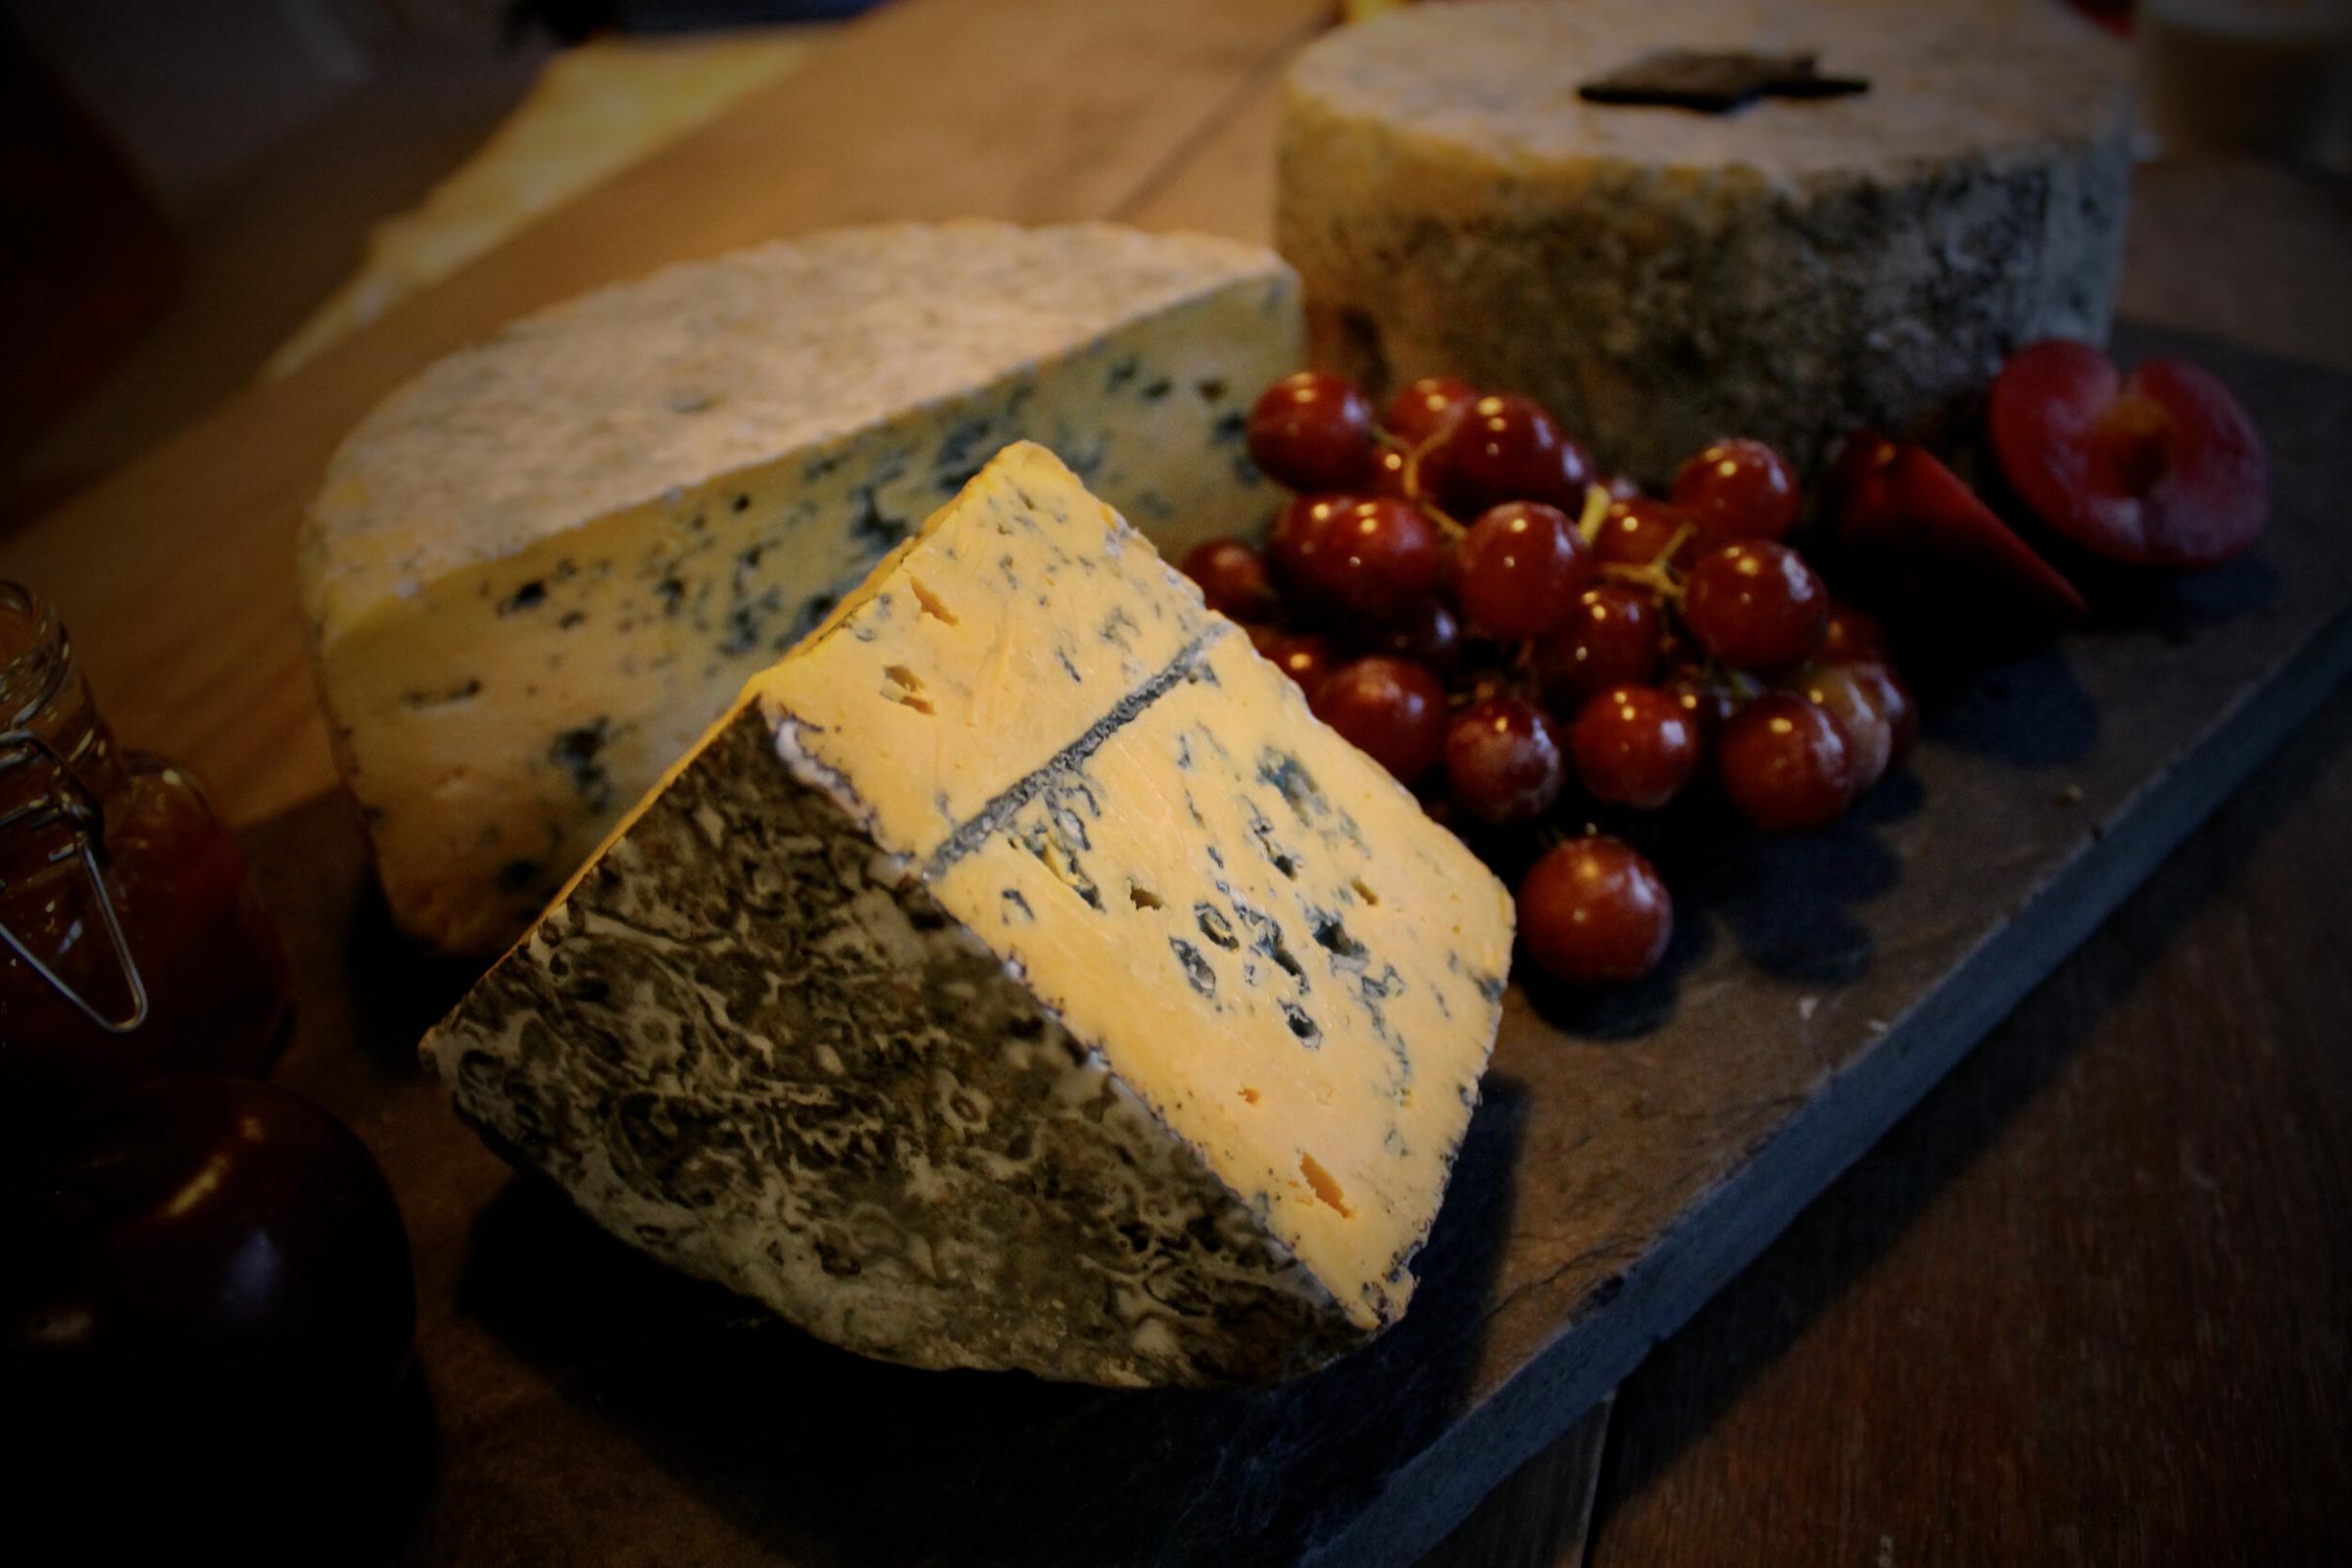 Trefaldwyn Blue cheese.